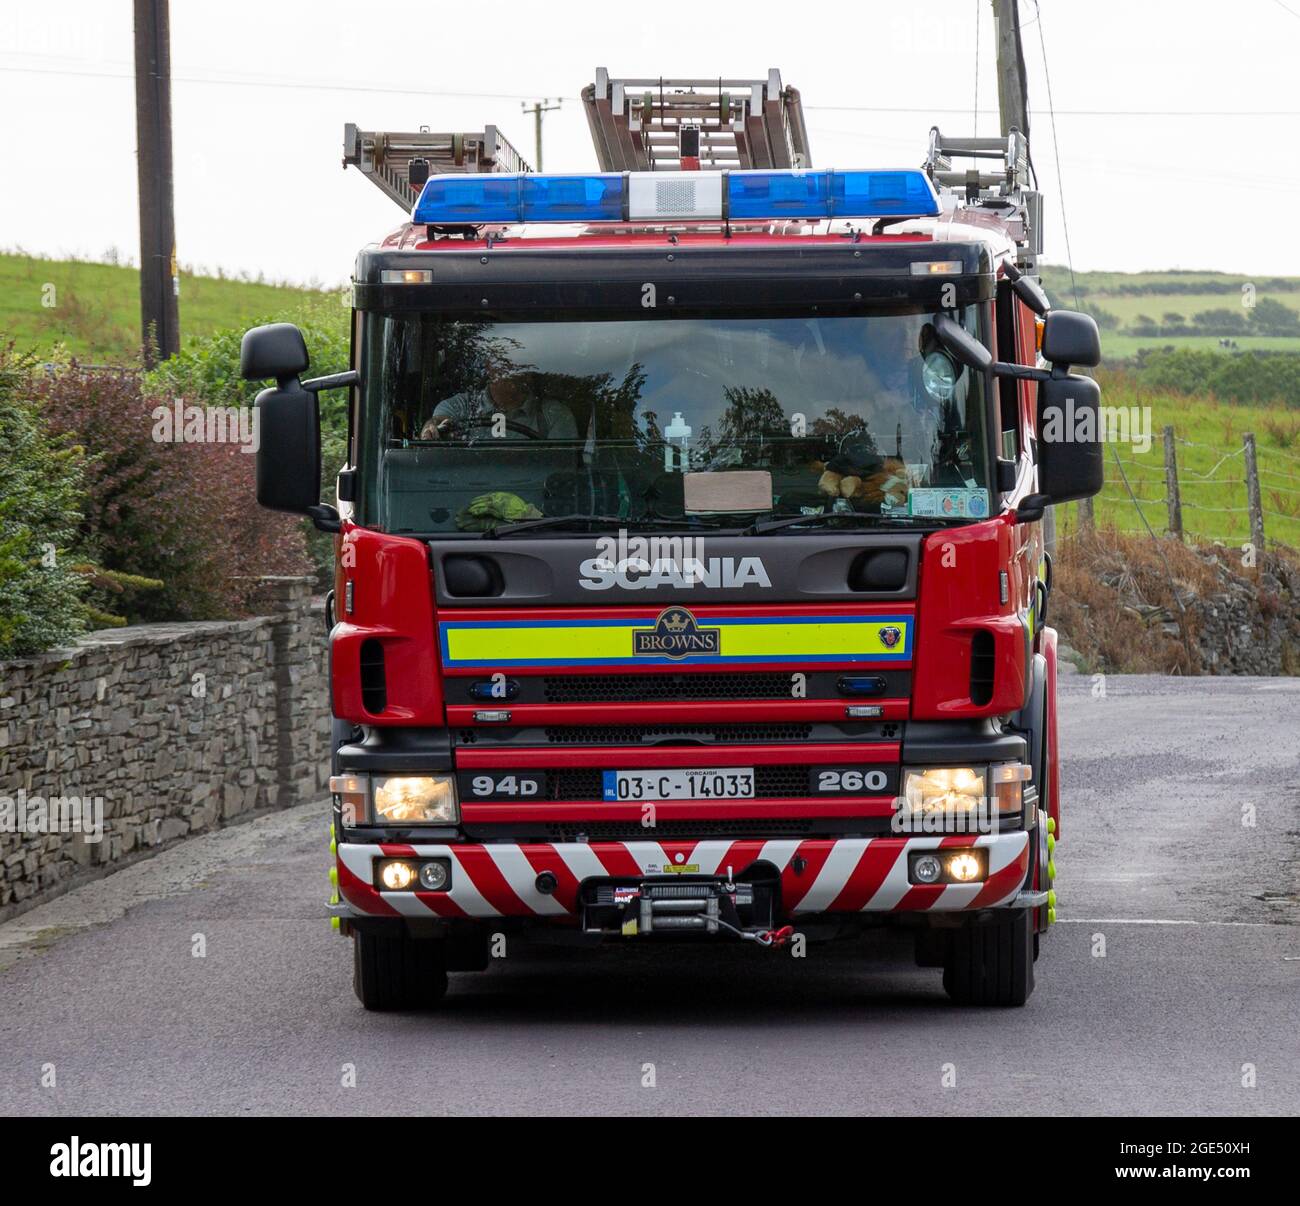 Motore antincendio Scania 94D 260 con luci lampeggianti Foto Stock